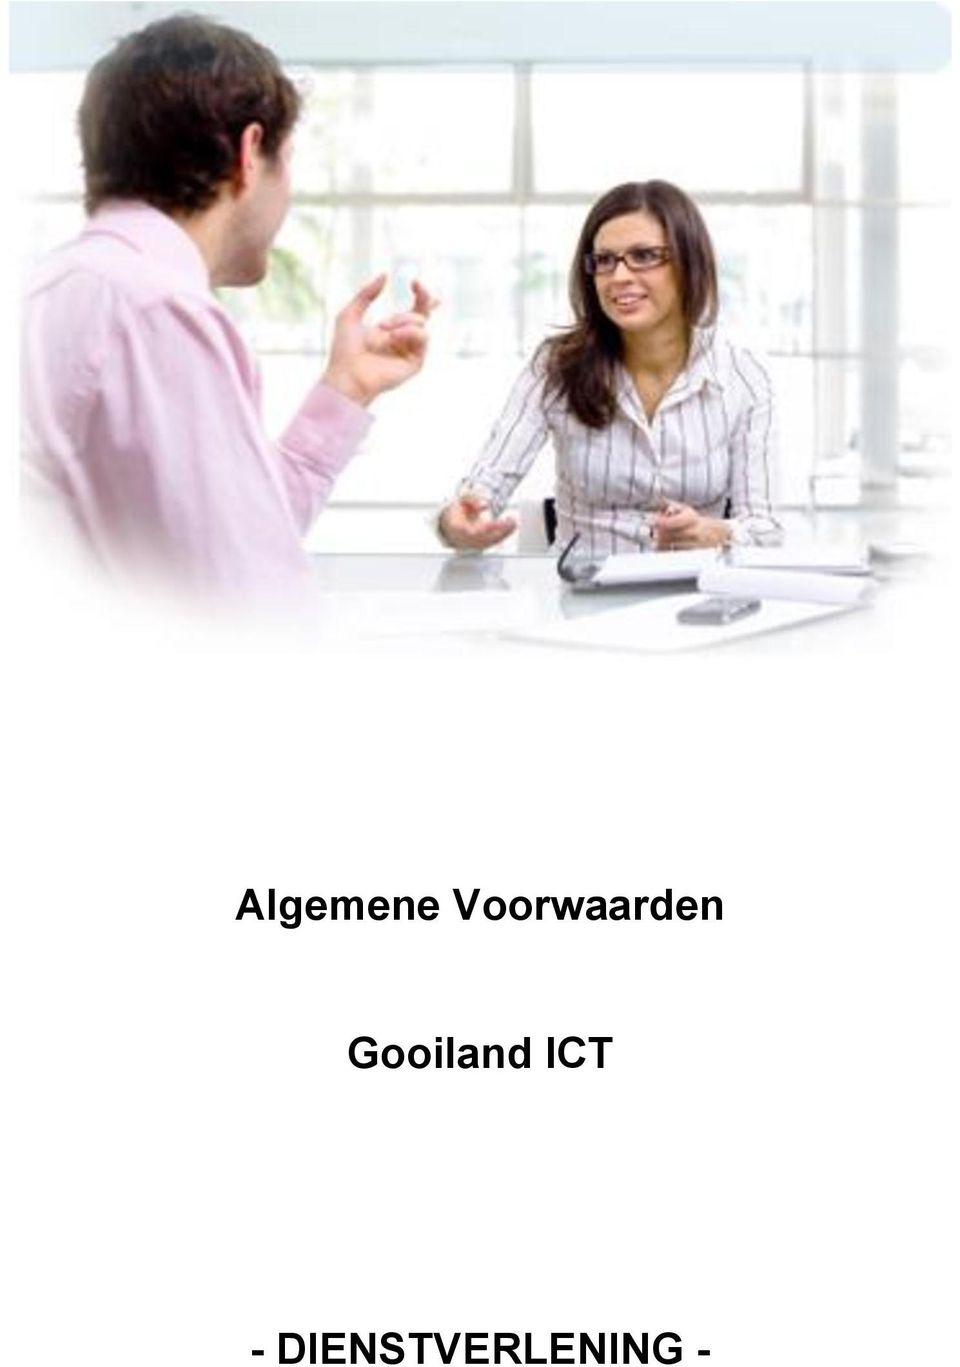 Gooiland ICT